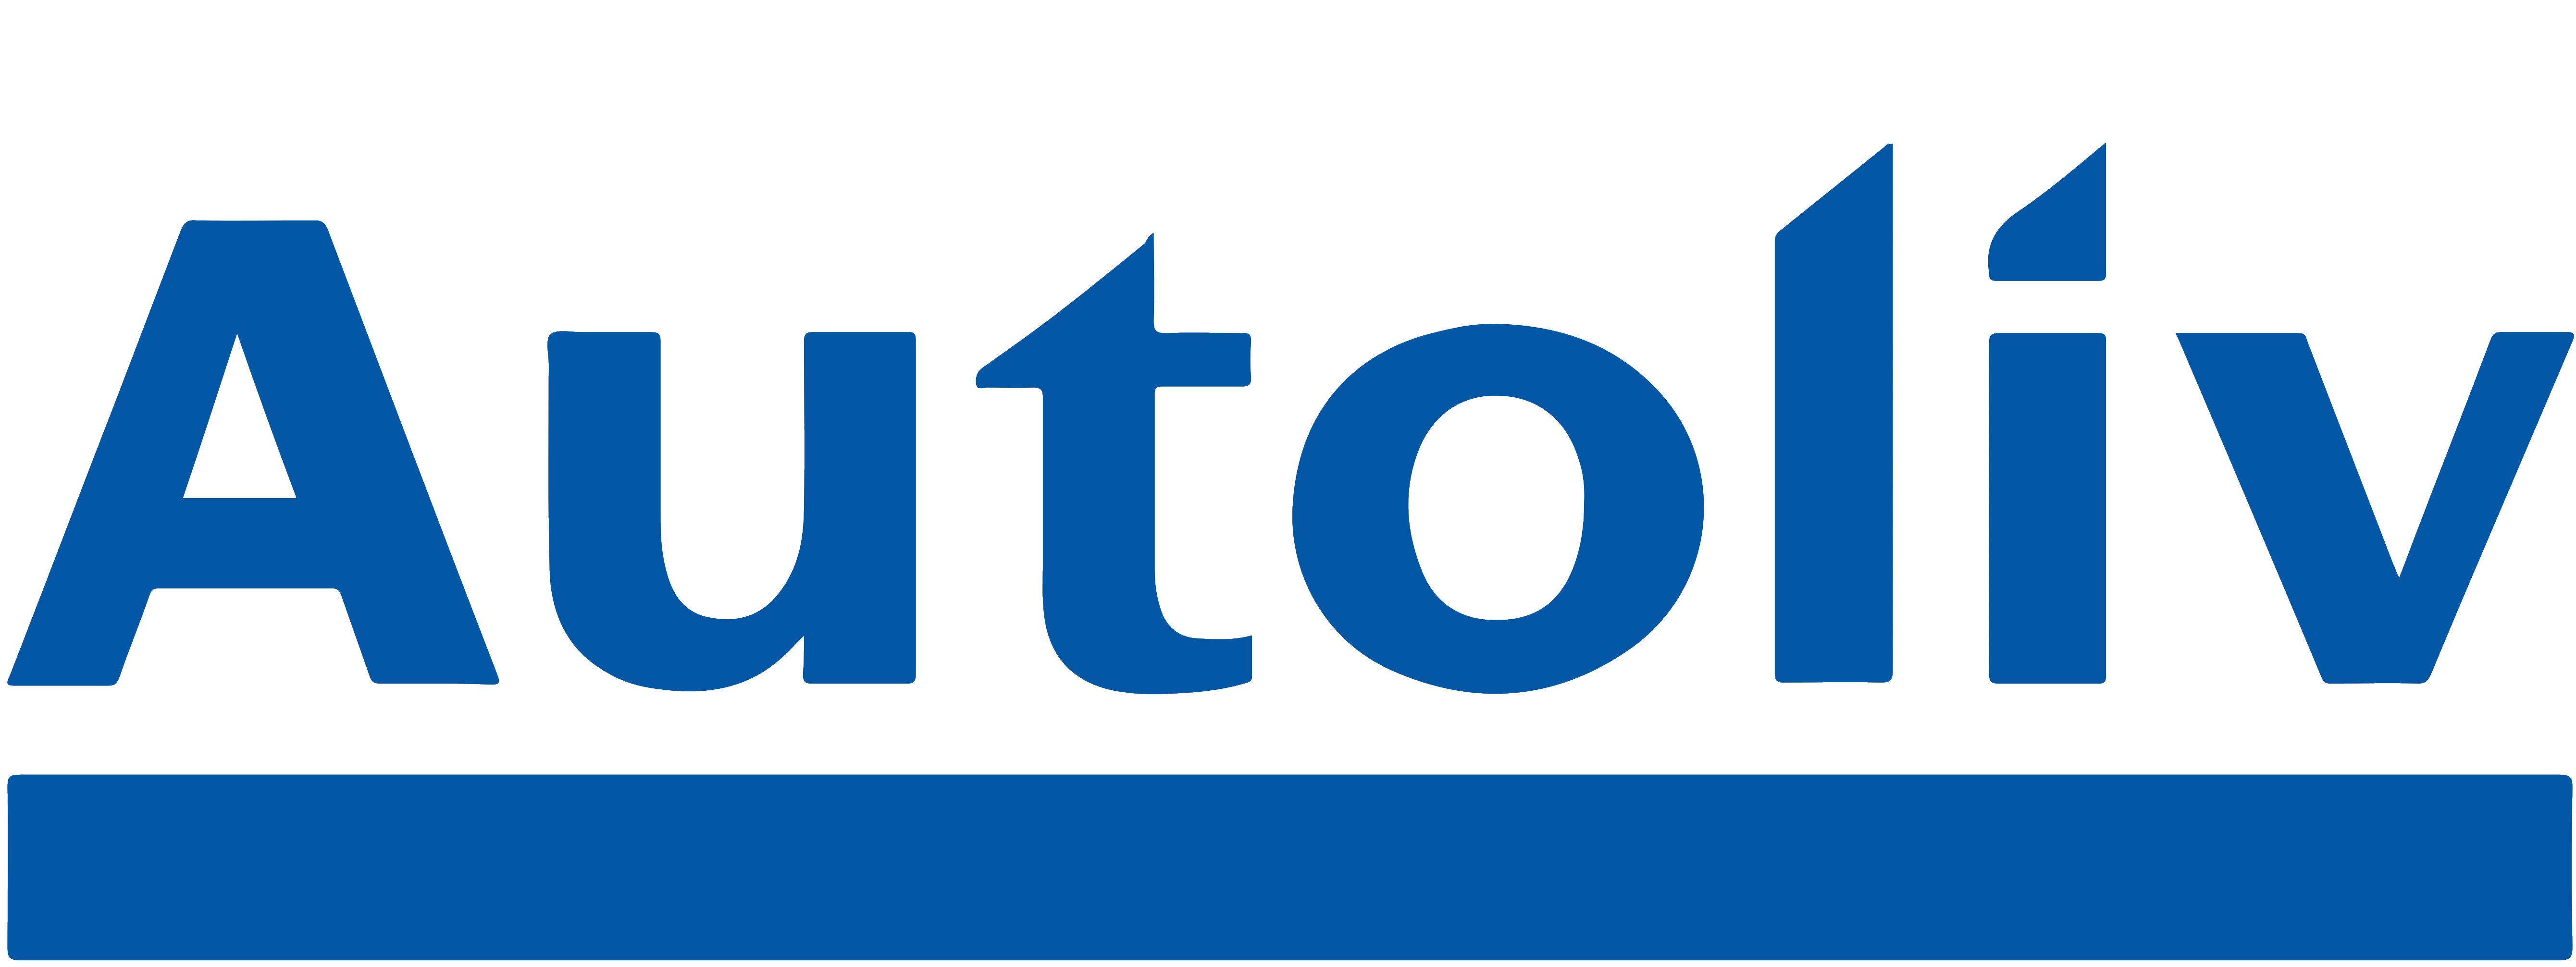 Autoliv logo, logotype